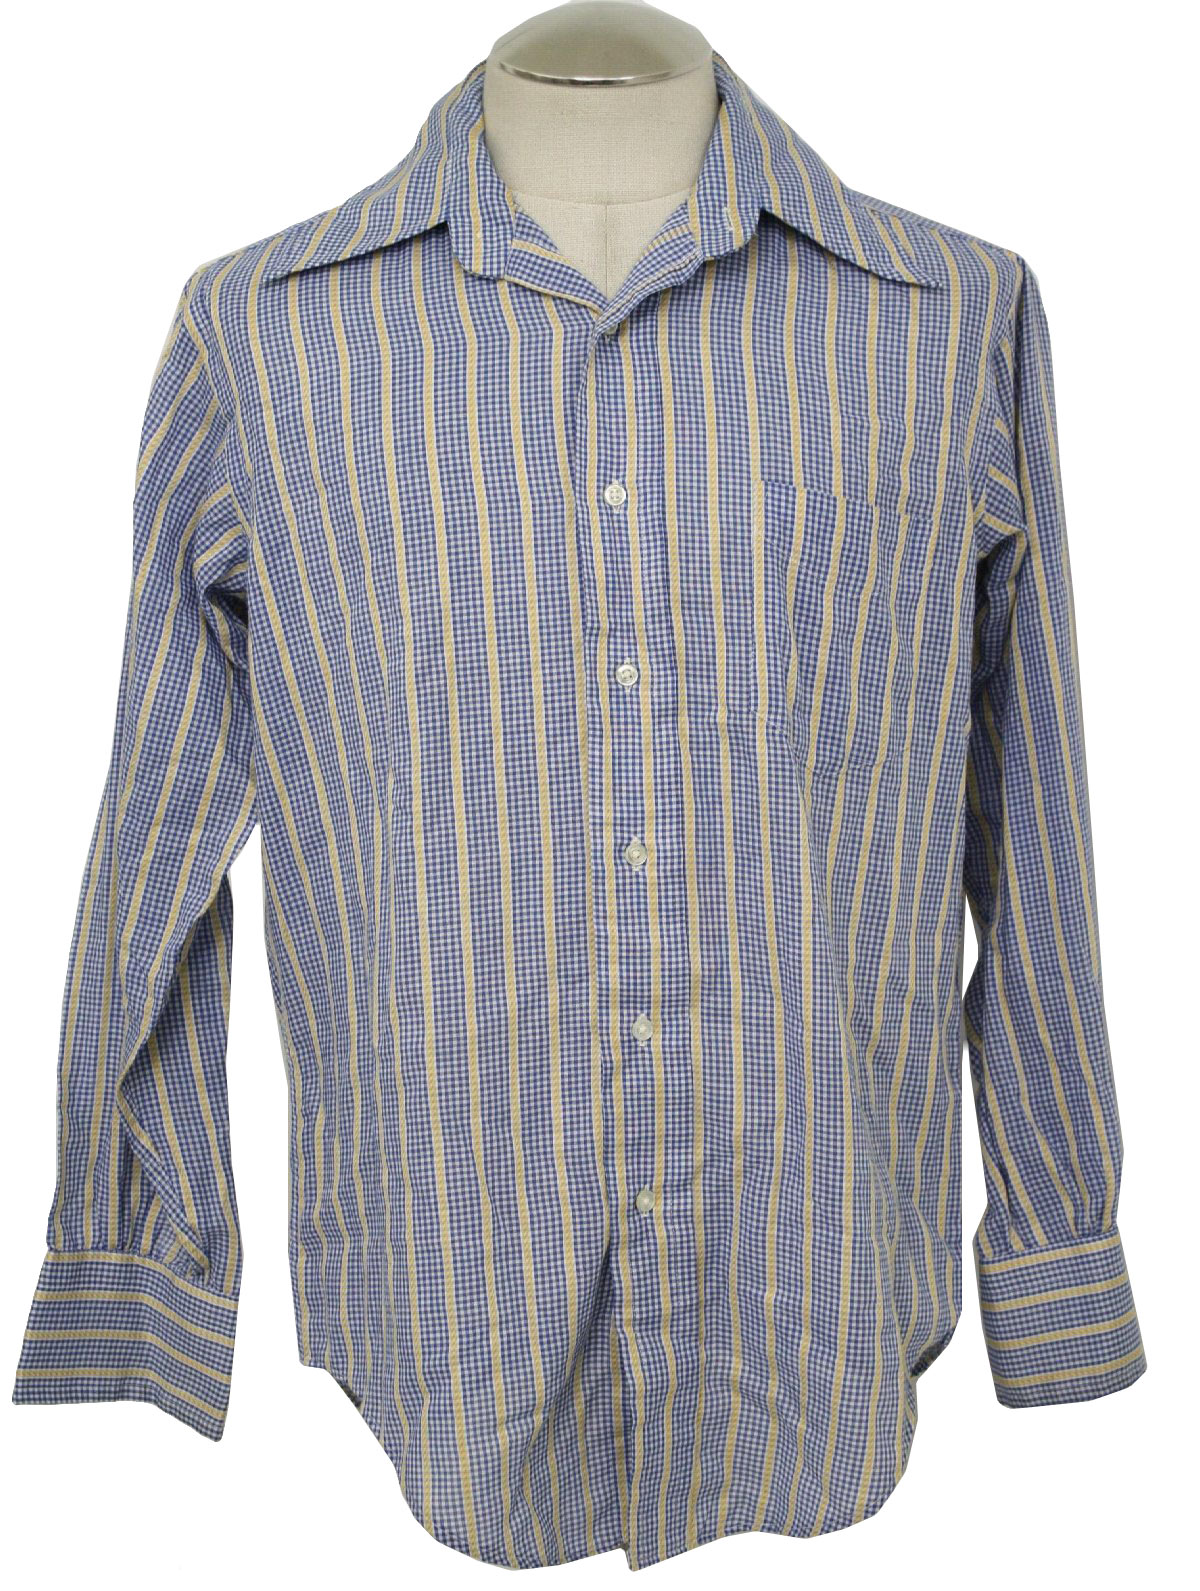 Norman Shirtmakers Seventies Vintage Shirt: 70s -Norman Shirtmakers ...